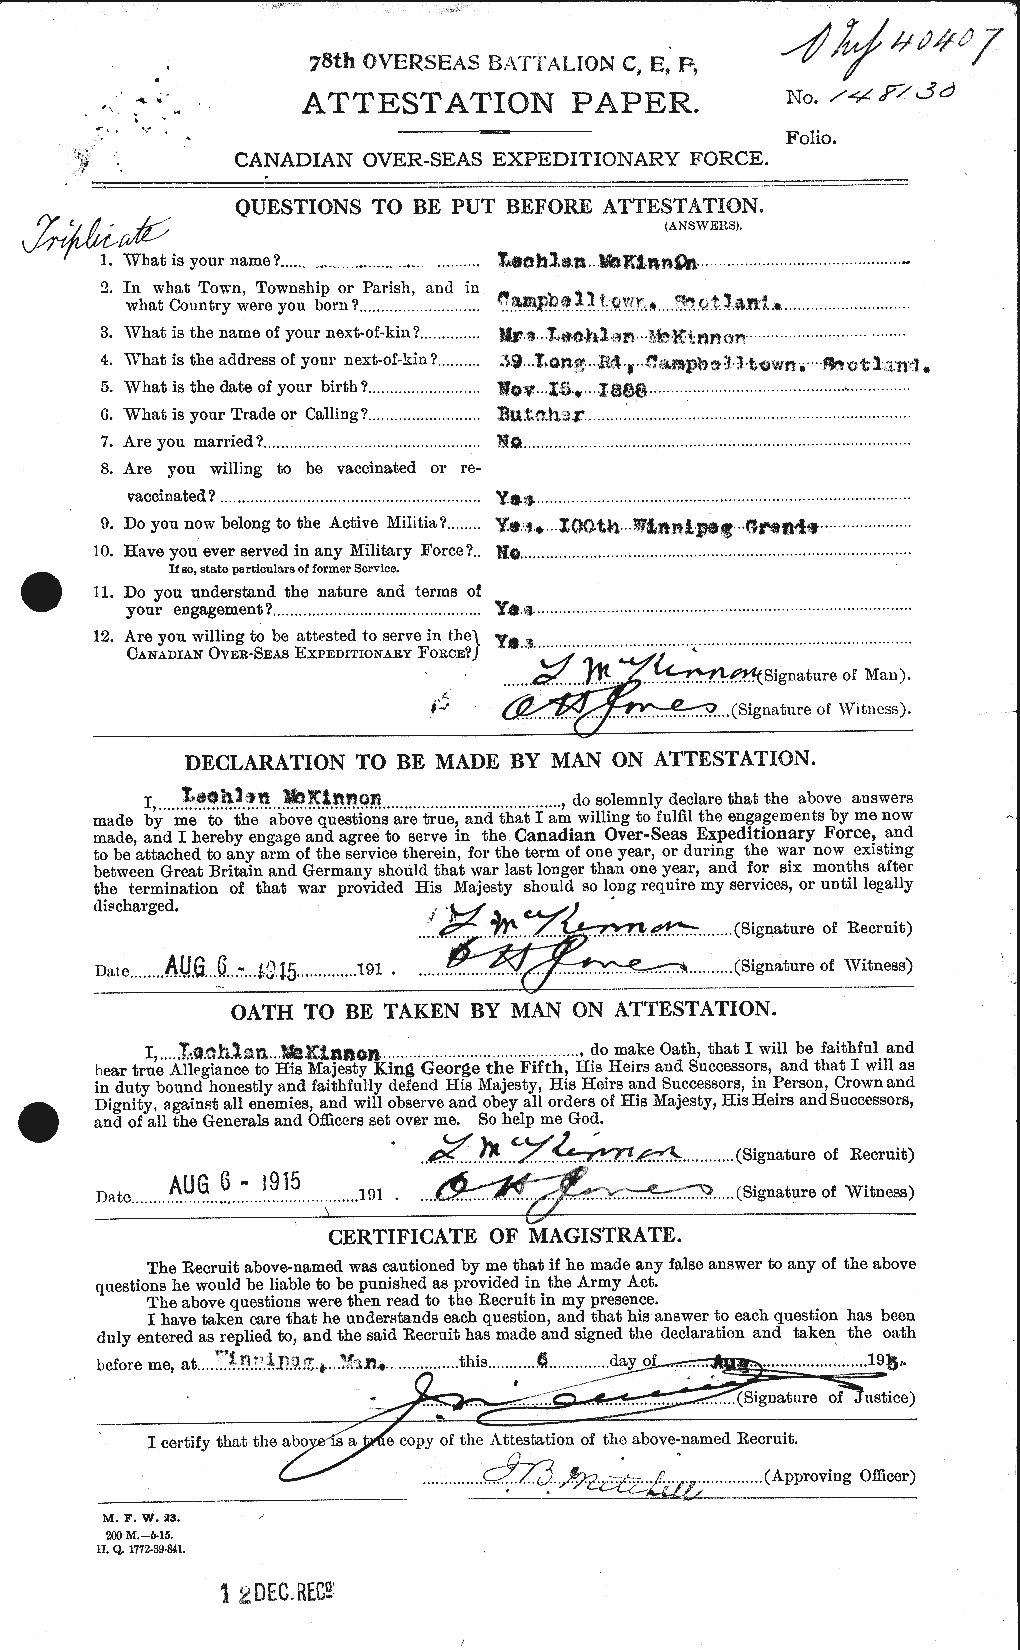 Dossiers du Personnel de la Première Guerre mondiale - CEC 533108a